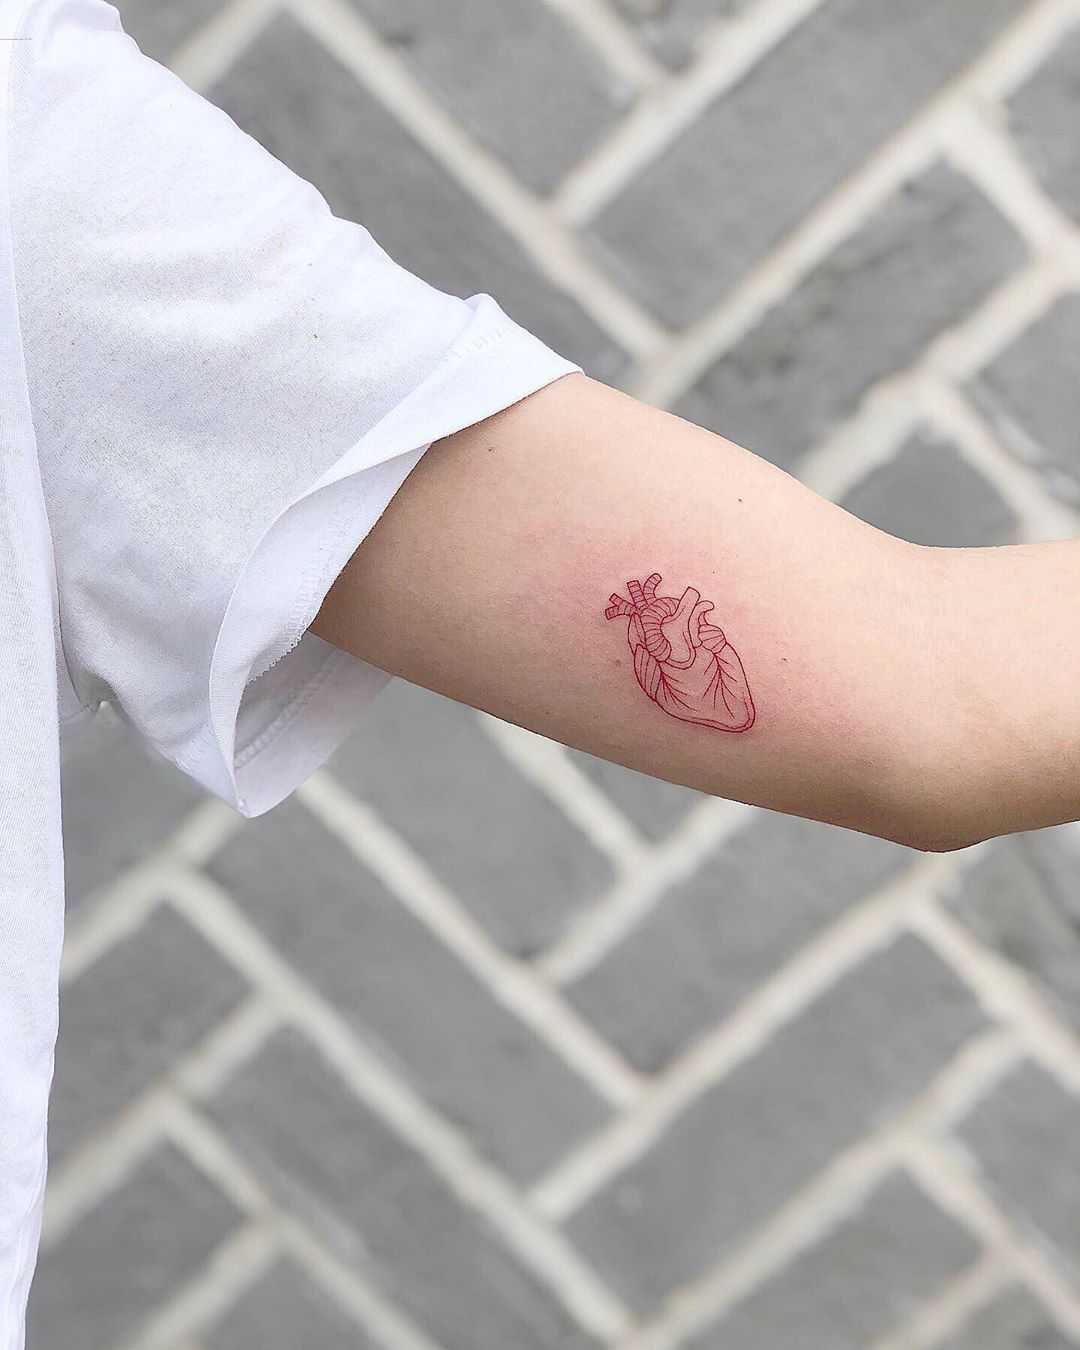 Tiny red heart tattoo by Loz Thomas